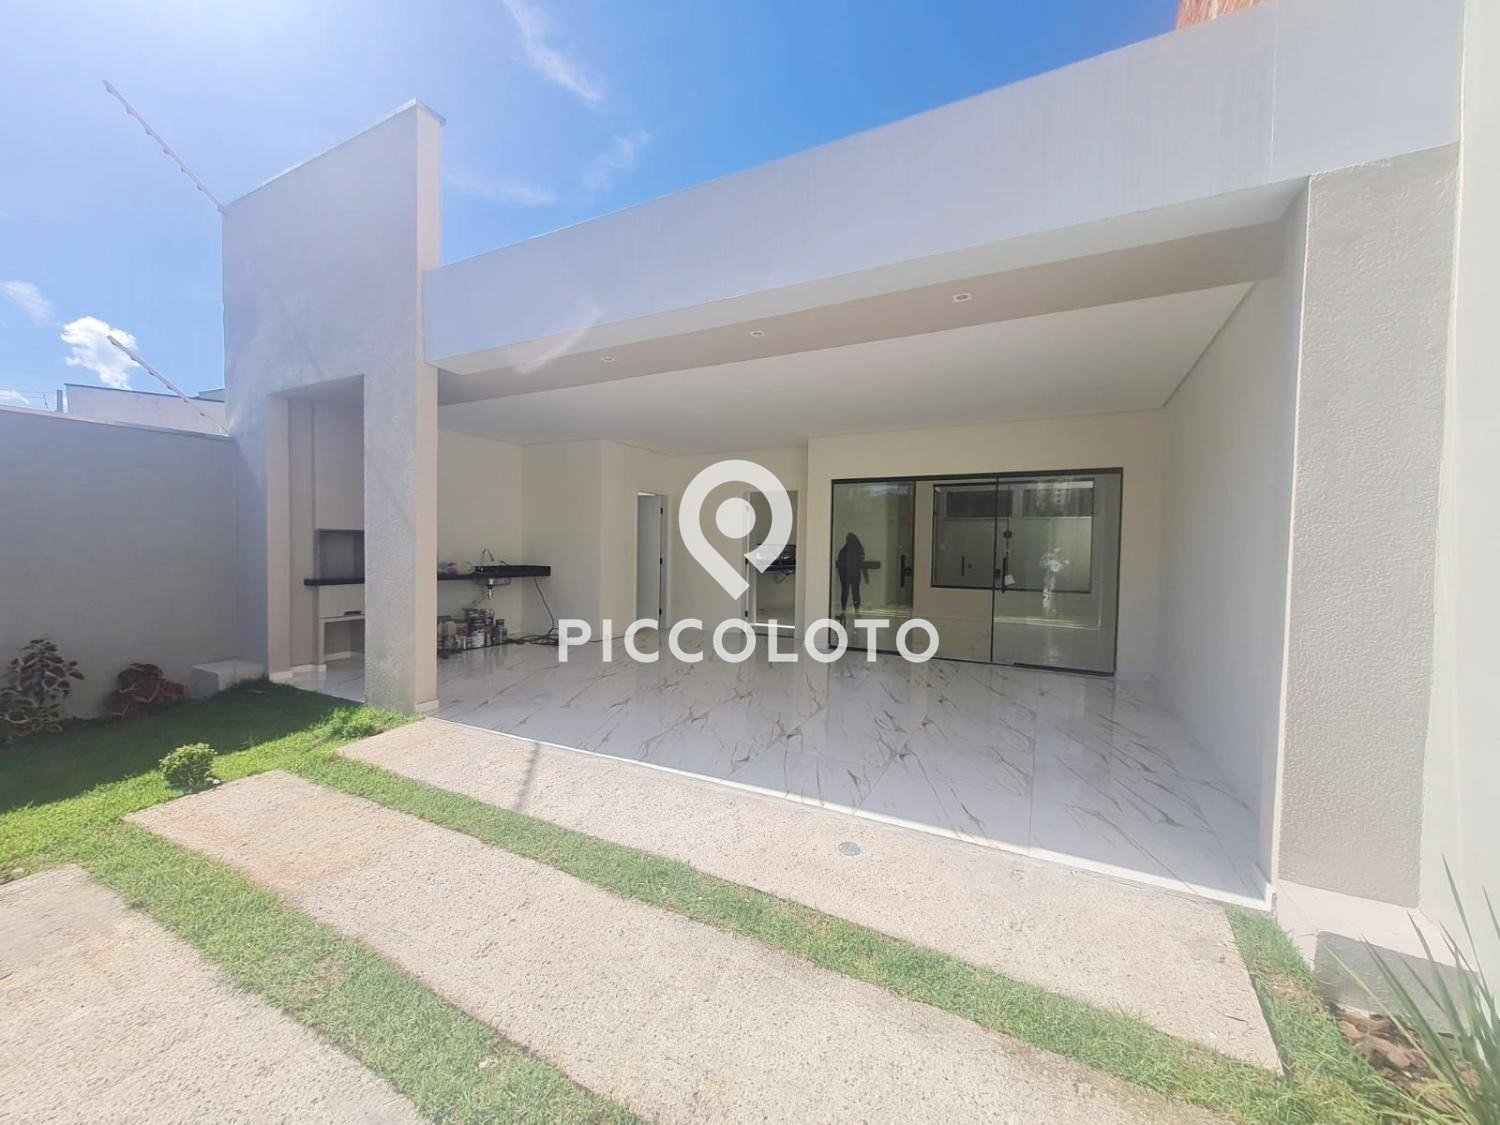 Piccoloto -Casa à venda no Residencial Parque da Fazenda em Campinas